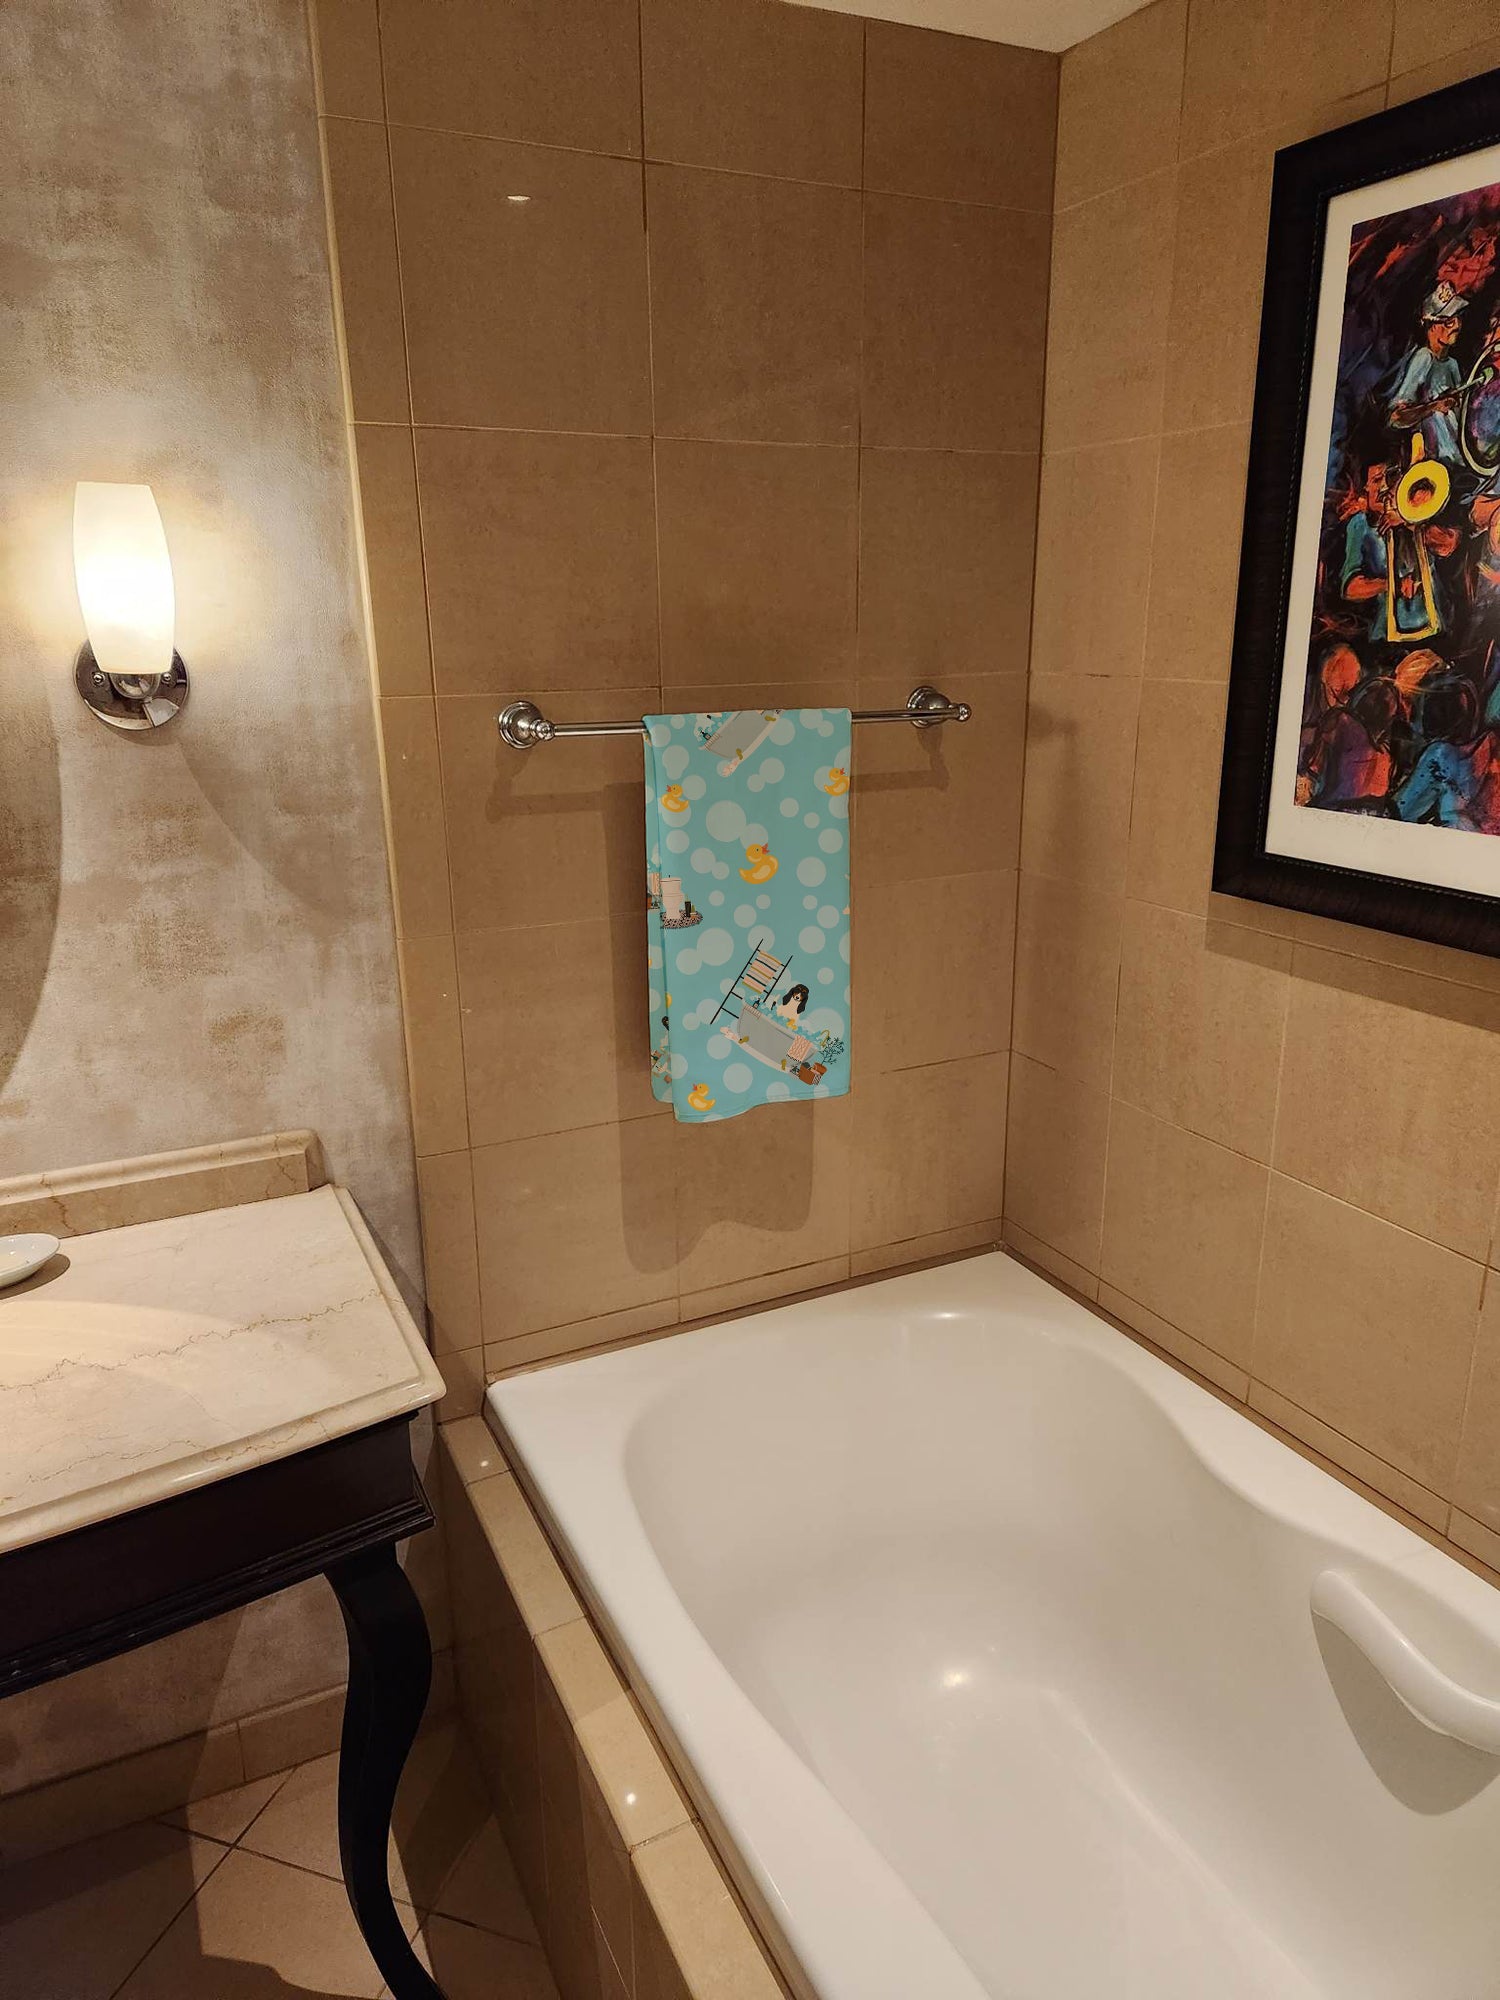 Swiss Hound in Bathtub Bath Towel Large